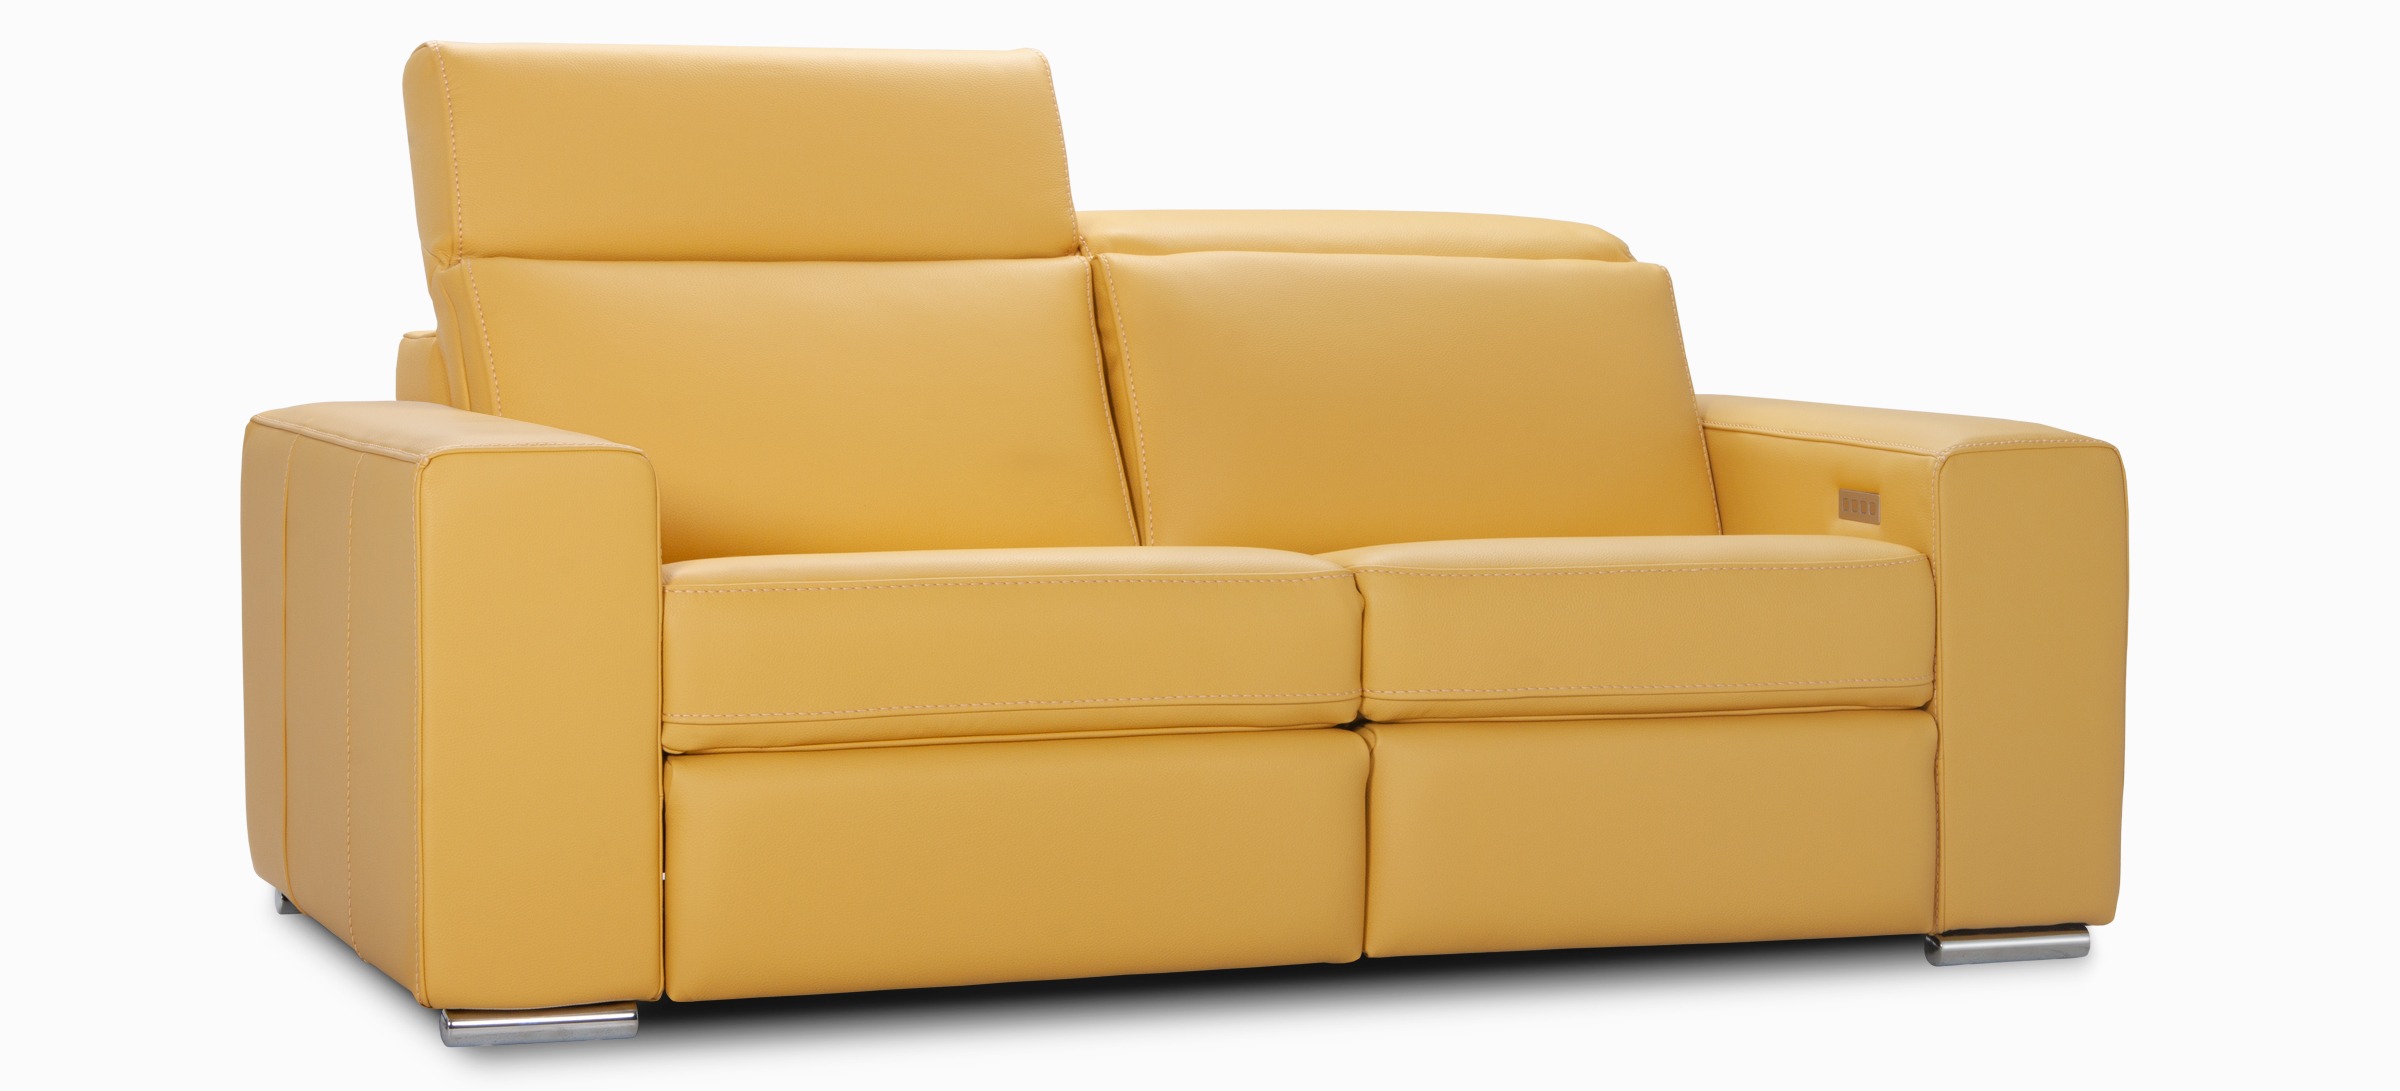 Seattle sofa apt illusion lemon side